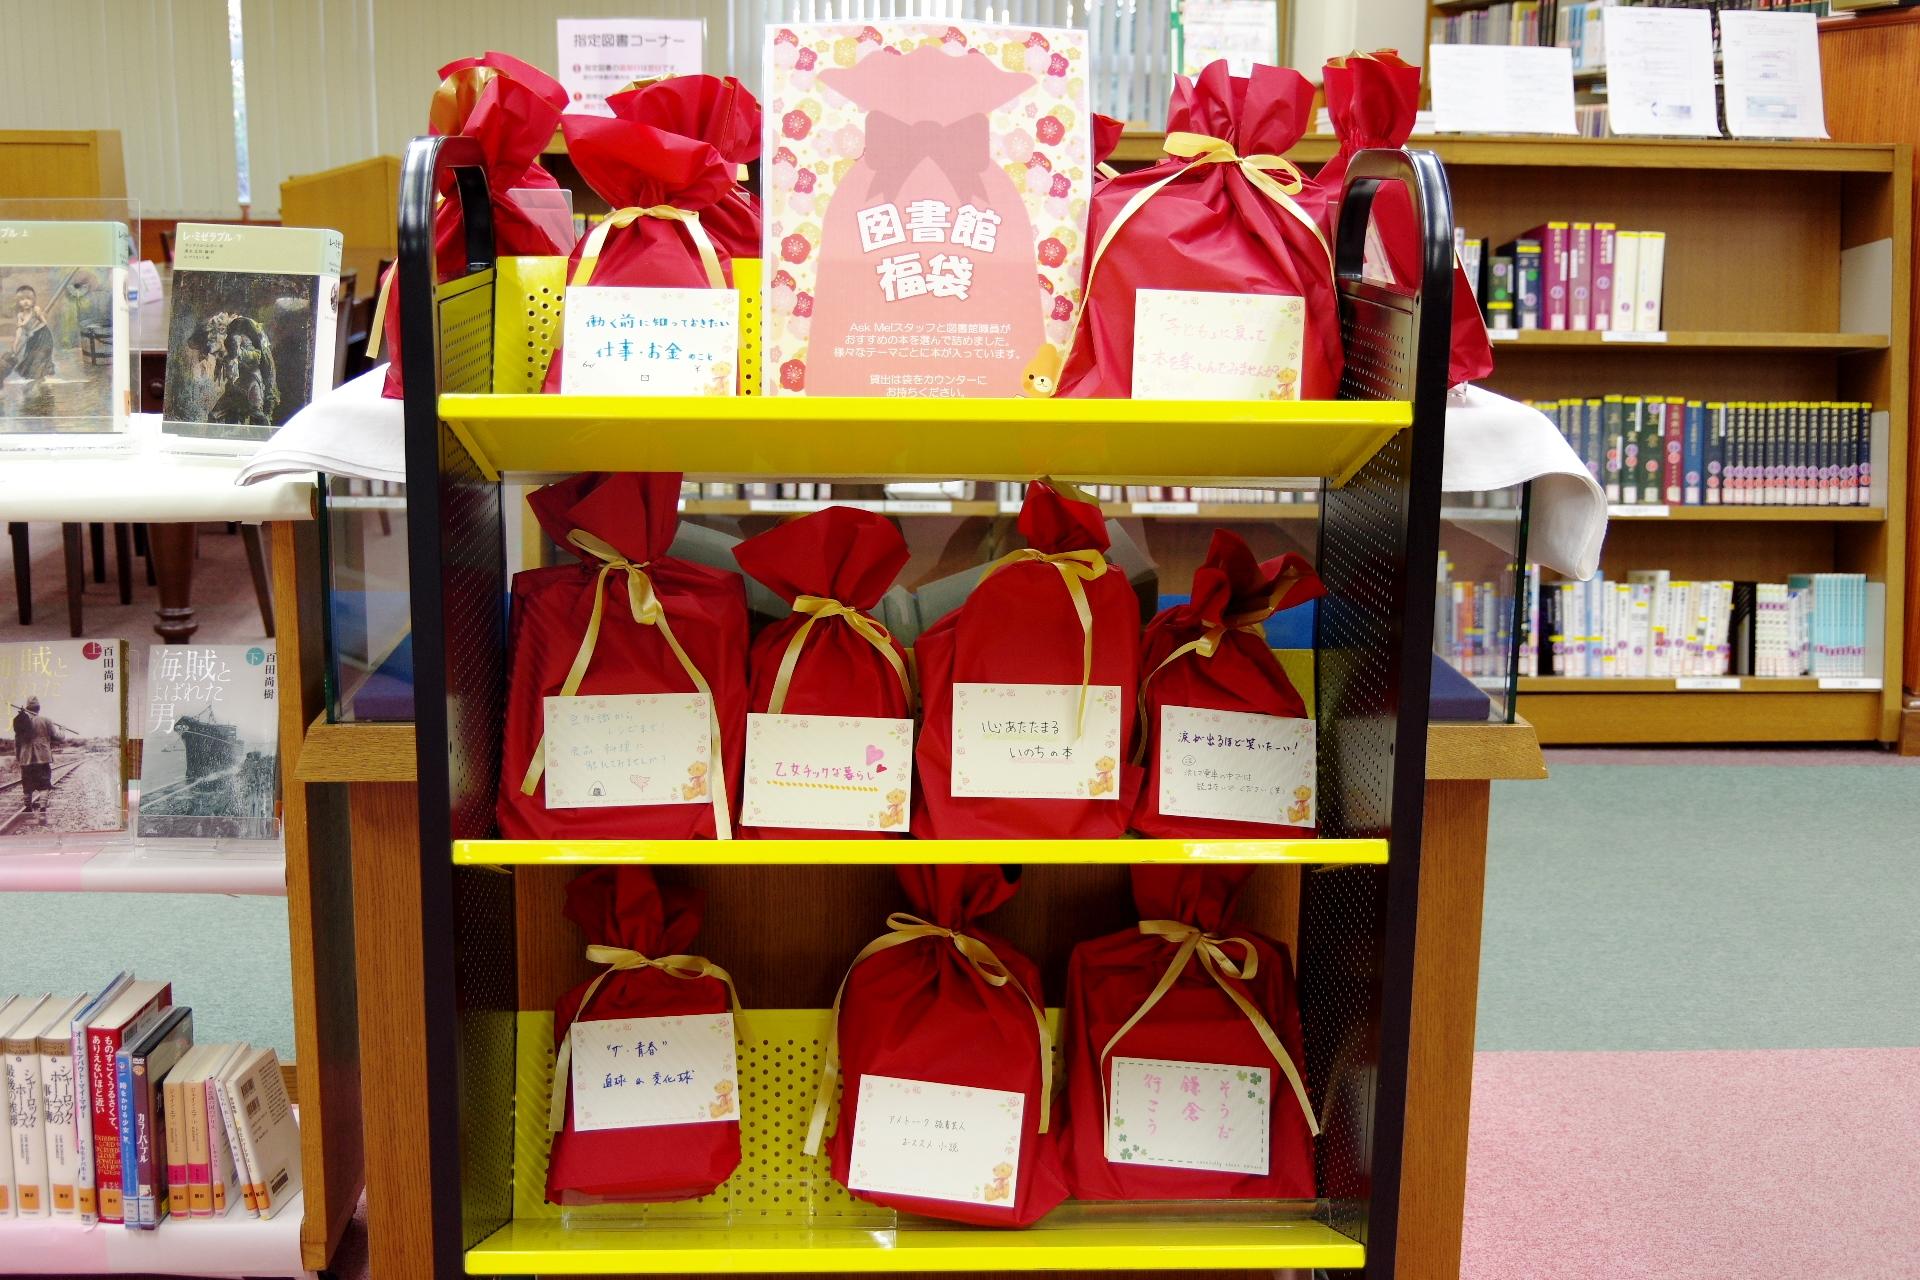 清泉女子大学附属図書館が新春企画として「福袋」を用意 -- 図書館スタッフと学生スタッフがテーマごとに3冊を選びパッケージ